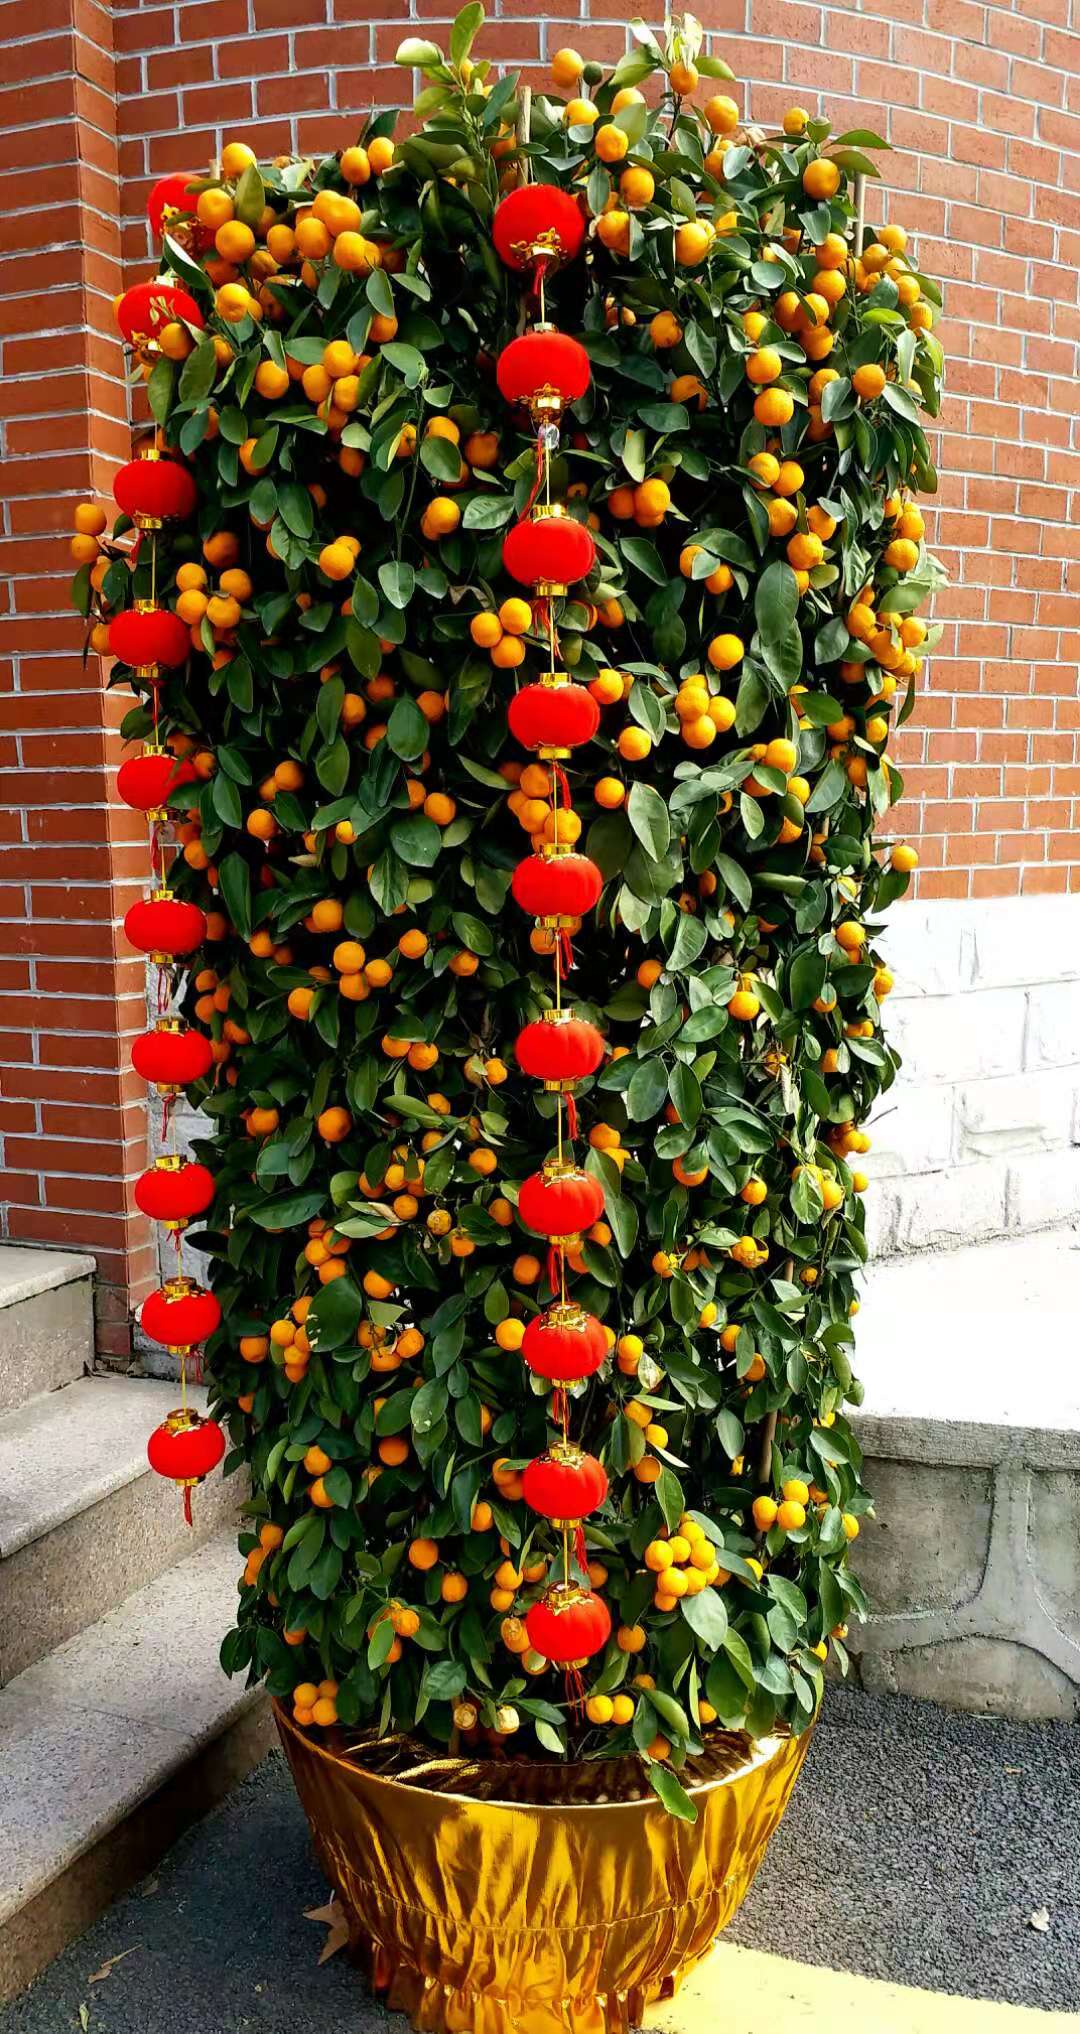 仿真水果树 仿真植物盆景小盆栽 塑料花 发财桔子金橘果实树-阿里巴巴